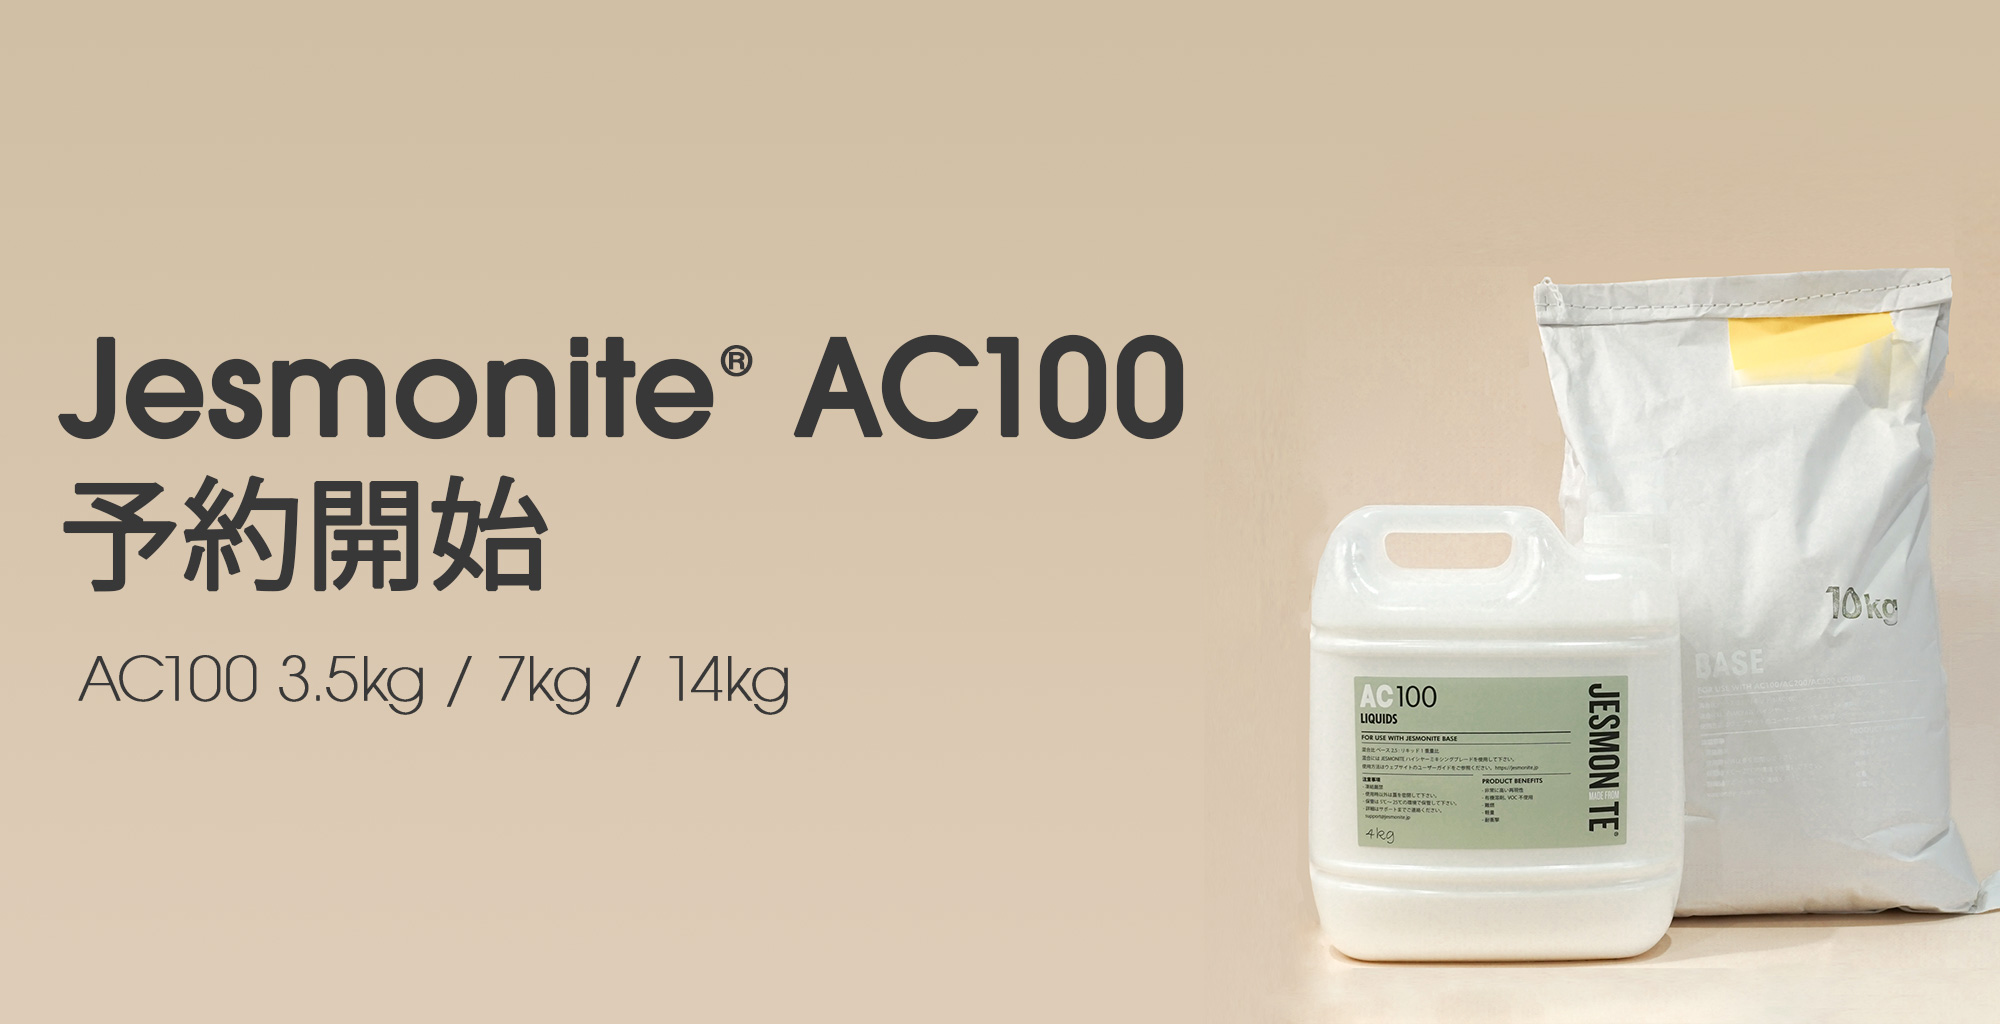 Jesmonite® AC100 予約開始： 12/26～27出荷予定